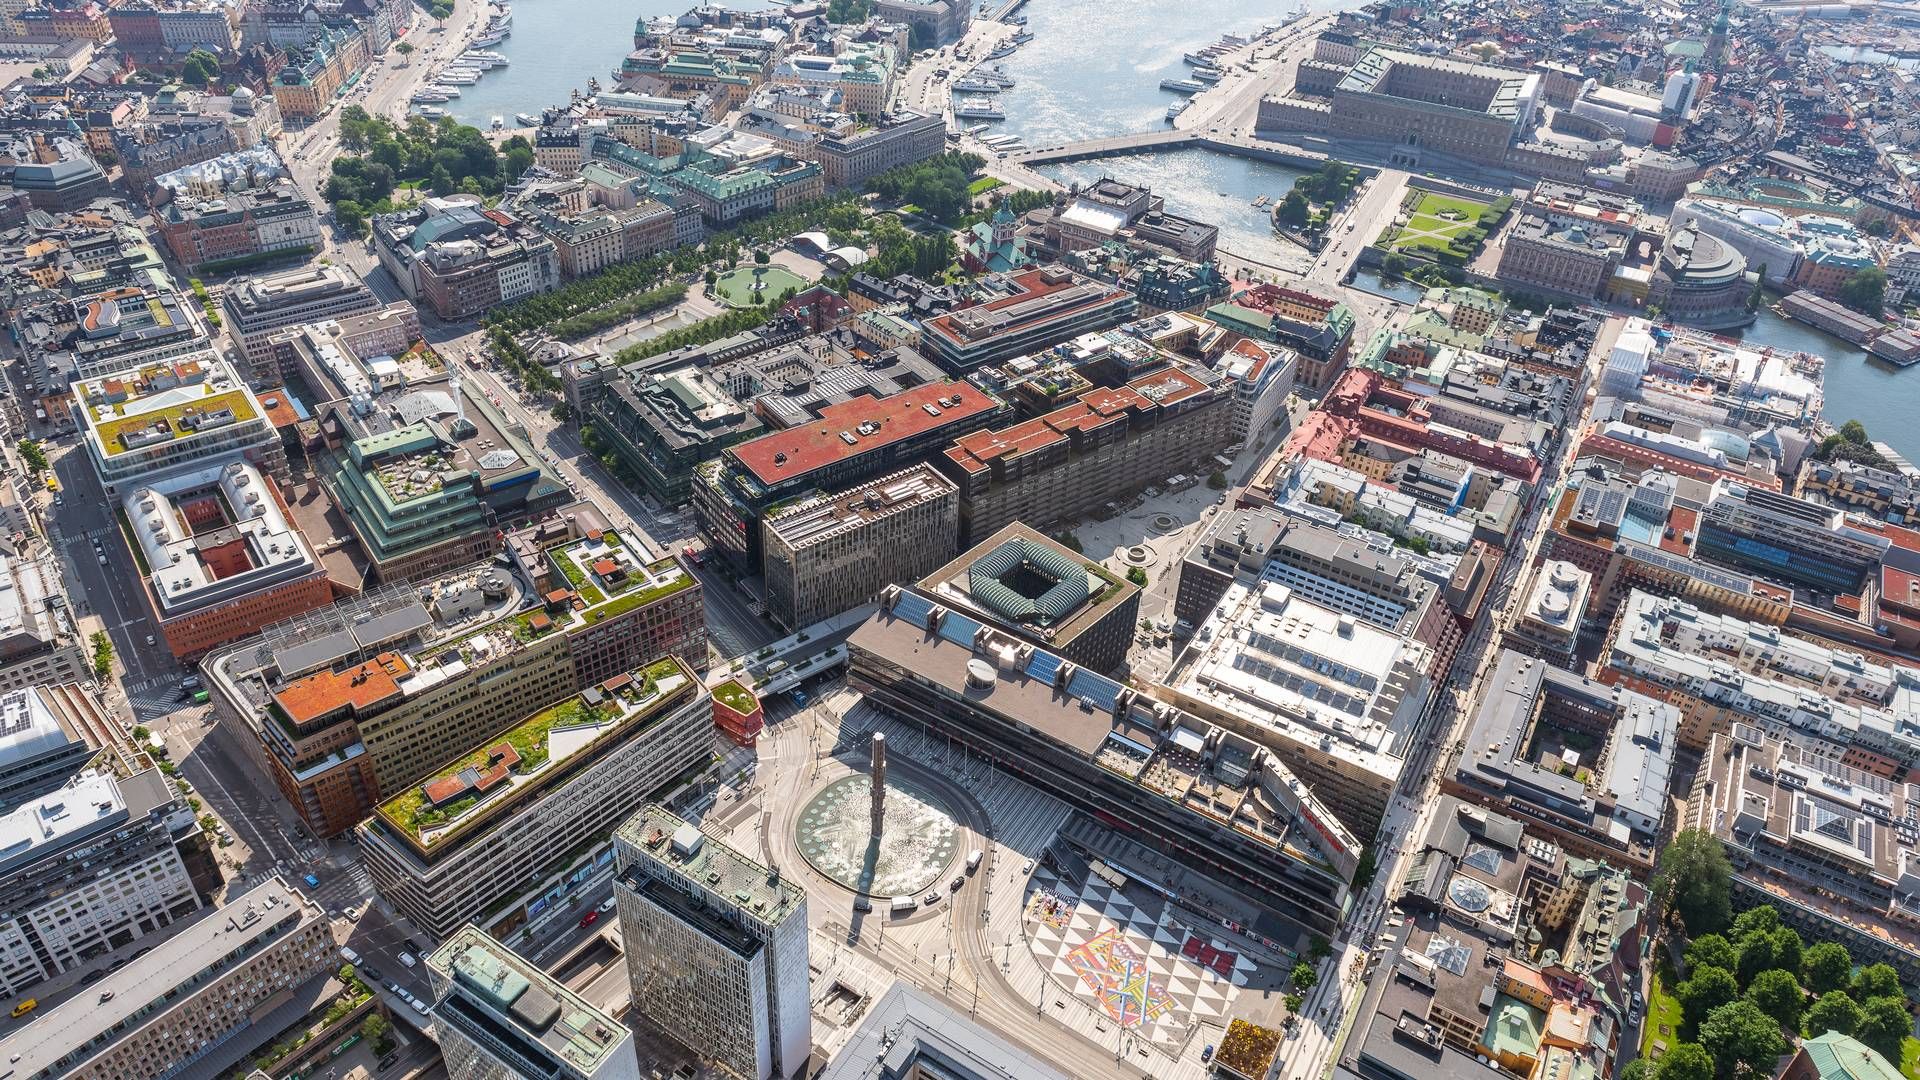 LYSNING I STOCKHOLM: Det har blitt lettere for svenske eiendomsselskaper å hente penger i obligasjonsmarkedet. | Foto: Amf Fastigheter / Pr